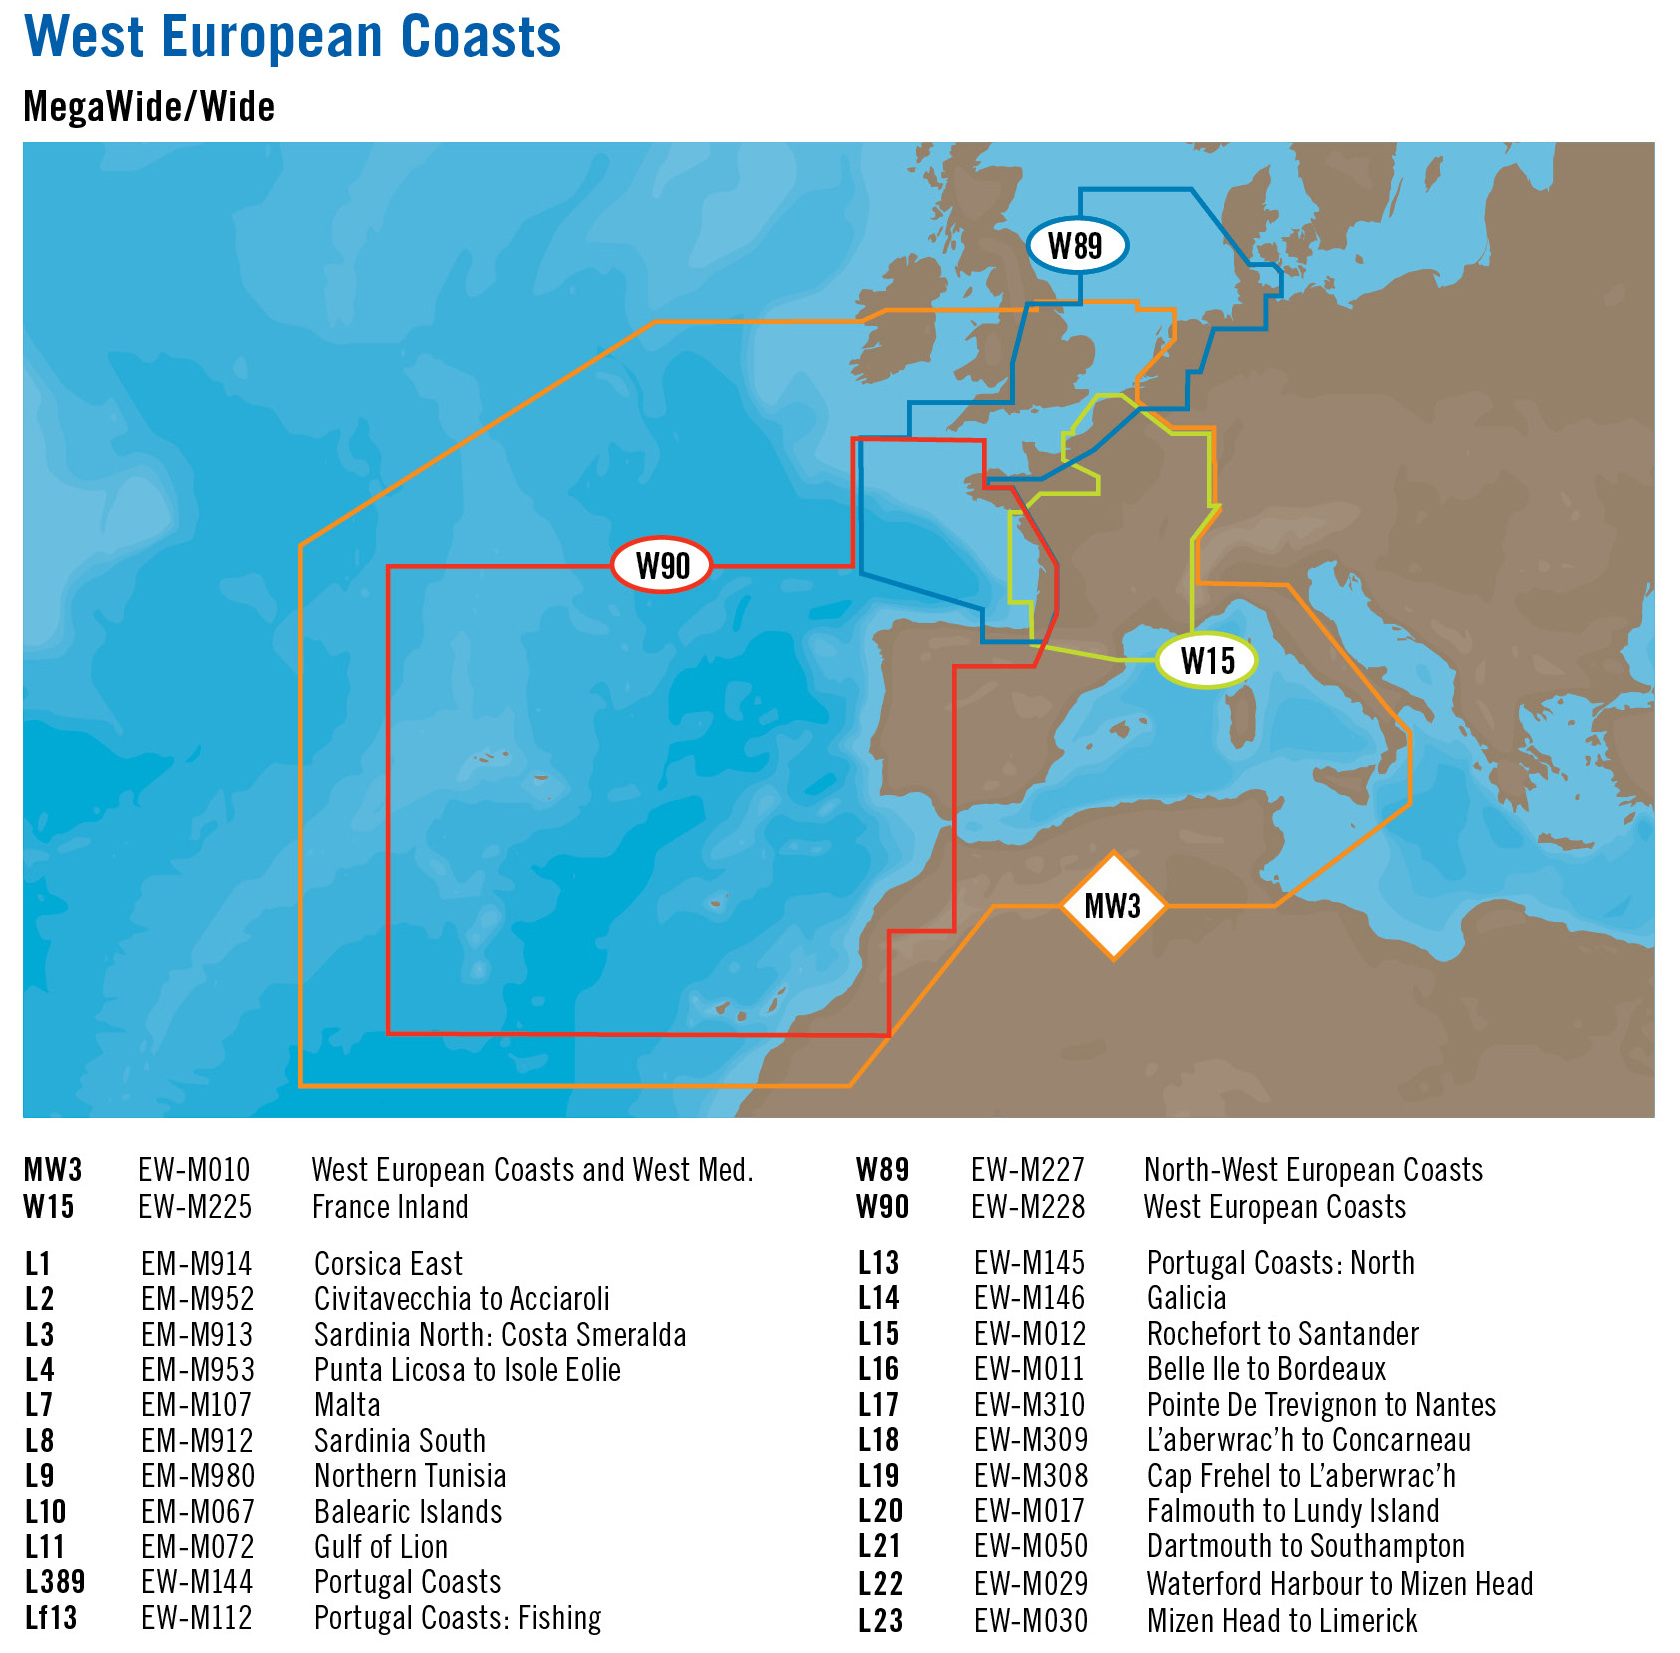    Europa Zachodnia MW i W 